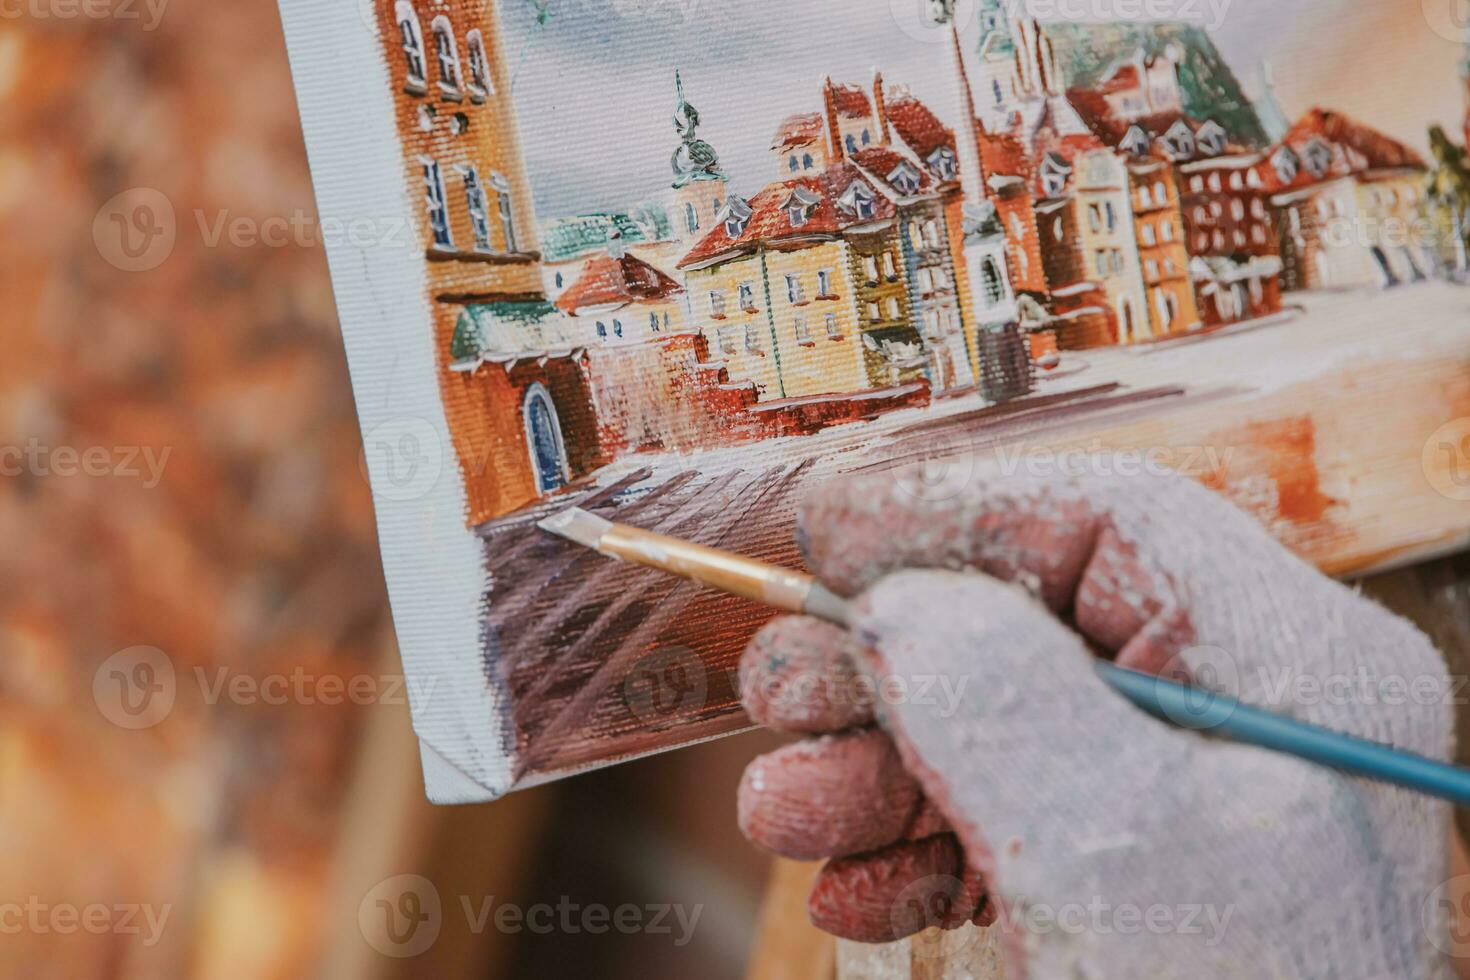 målning från gammal stad av Warszawa i polen under målning i närbild foto